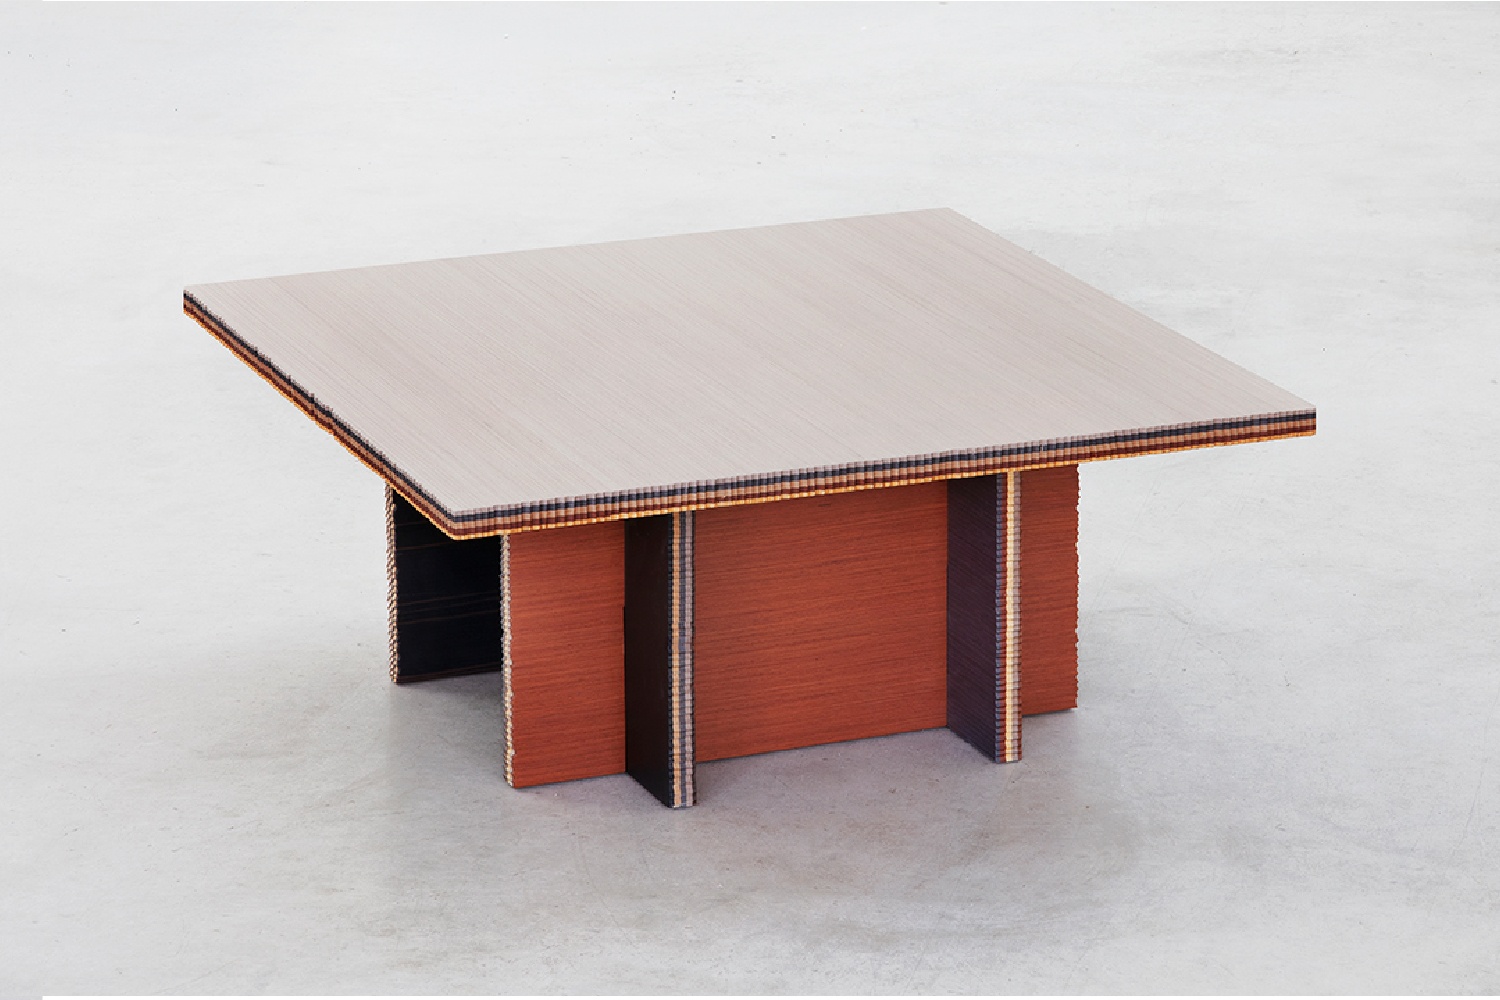 Il legno di recupero ALPI nella nuova collezione di tavoli “George”,  progettati da Marco Campardo per la SEEDS London Gallery